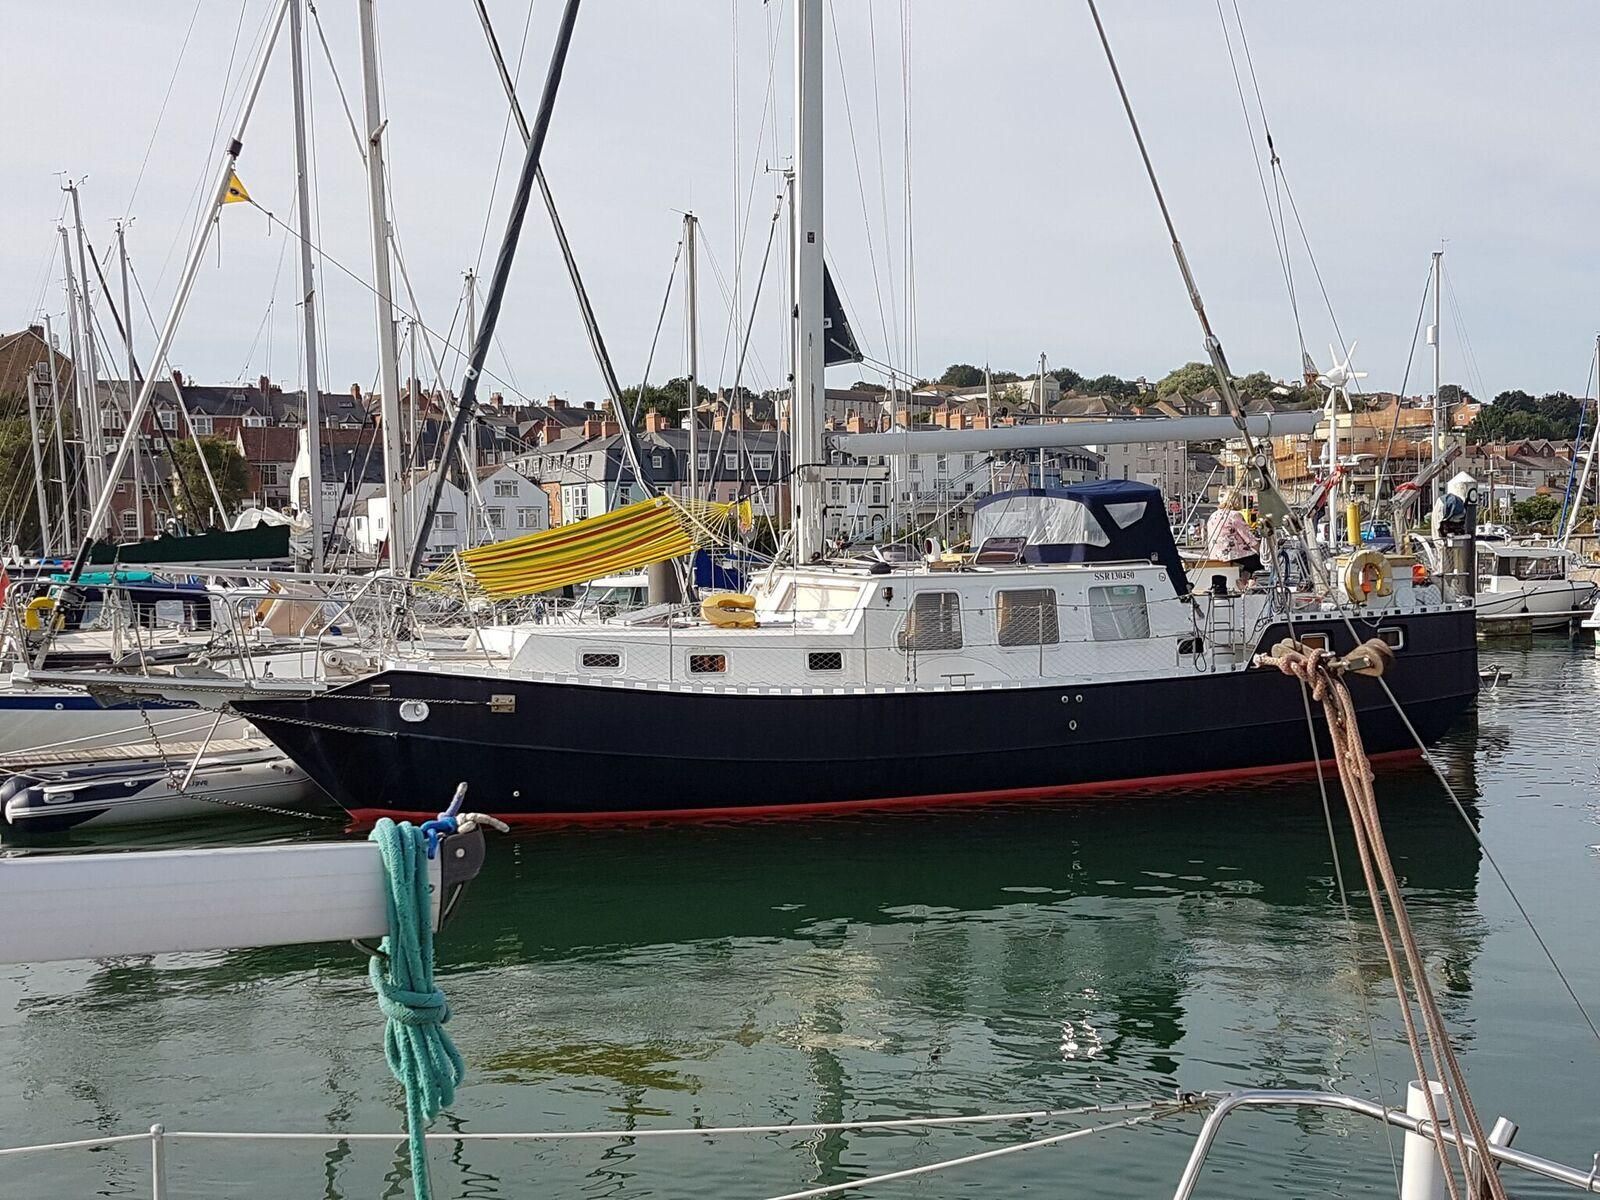 43' sailboat